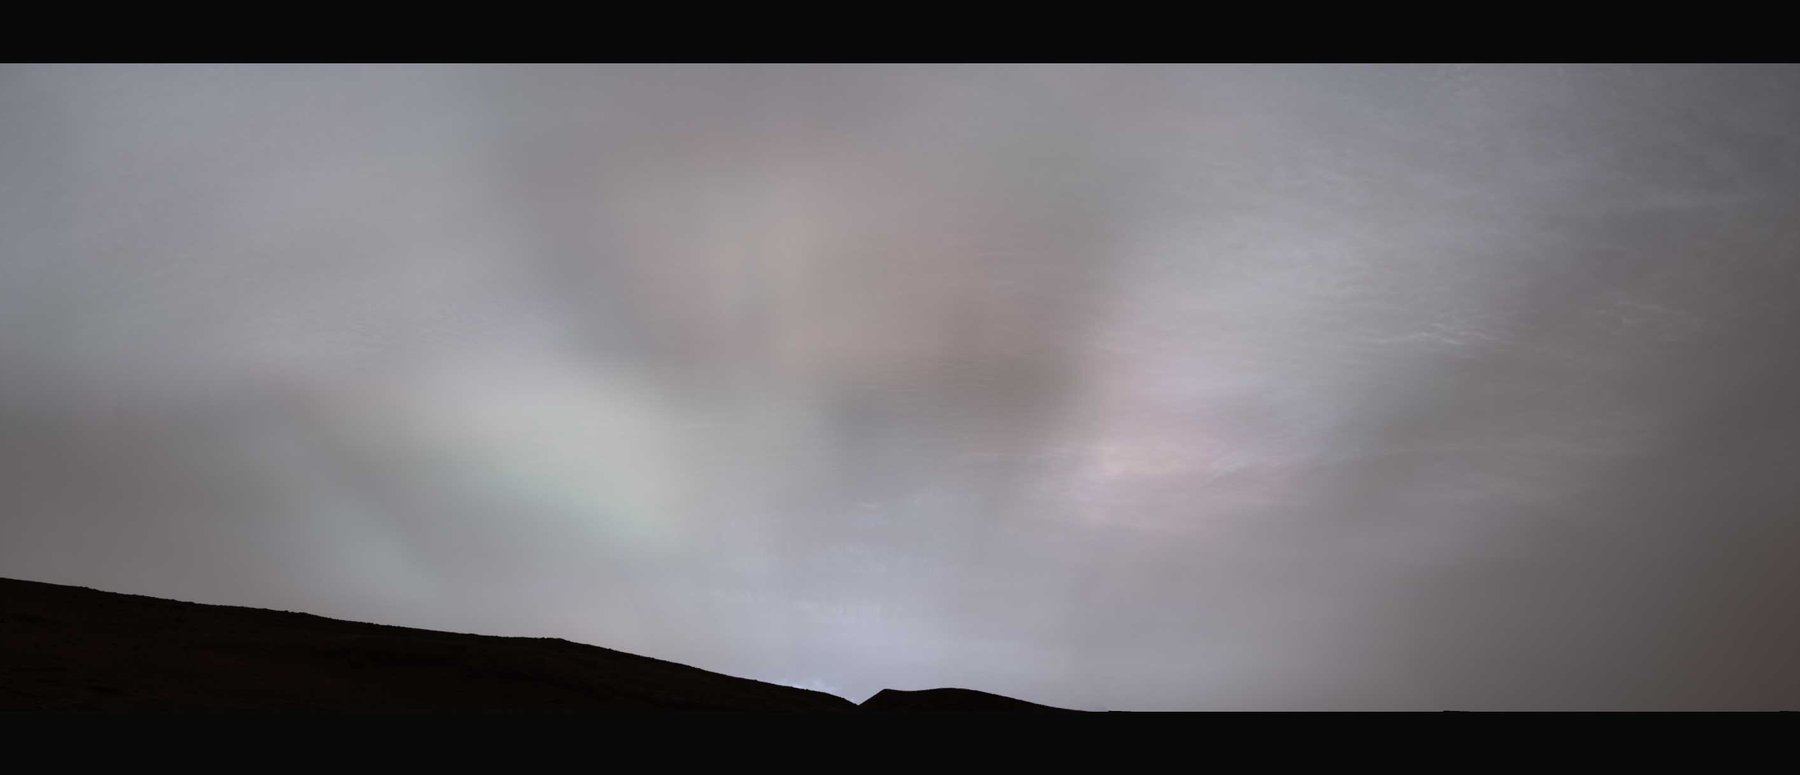 美国宇航局的火星探测器好奇号在这颗红色星球上看到耀眼的“太阳光线”